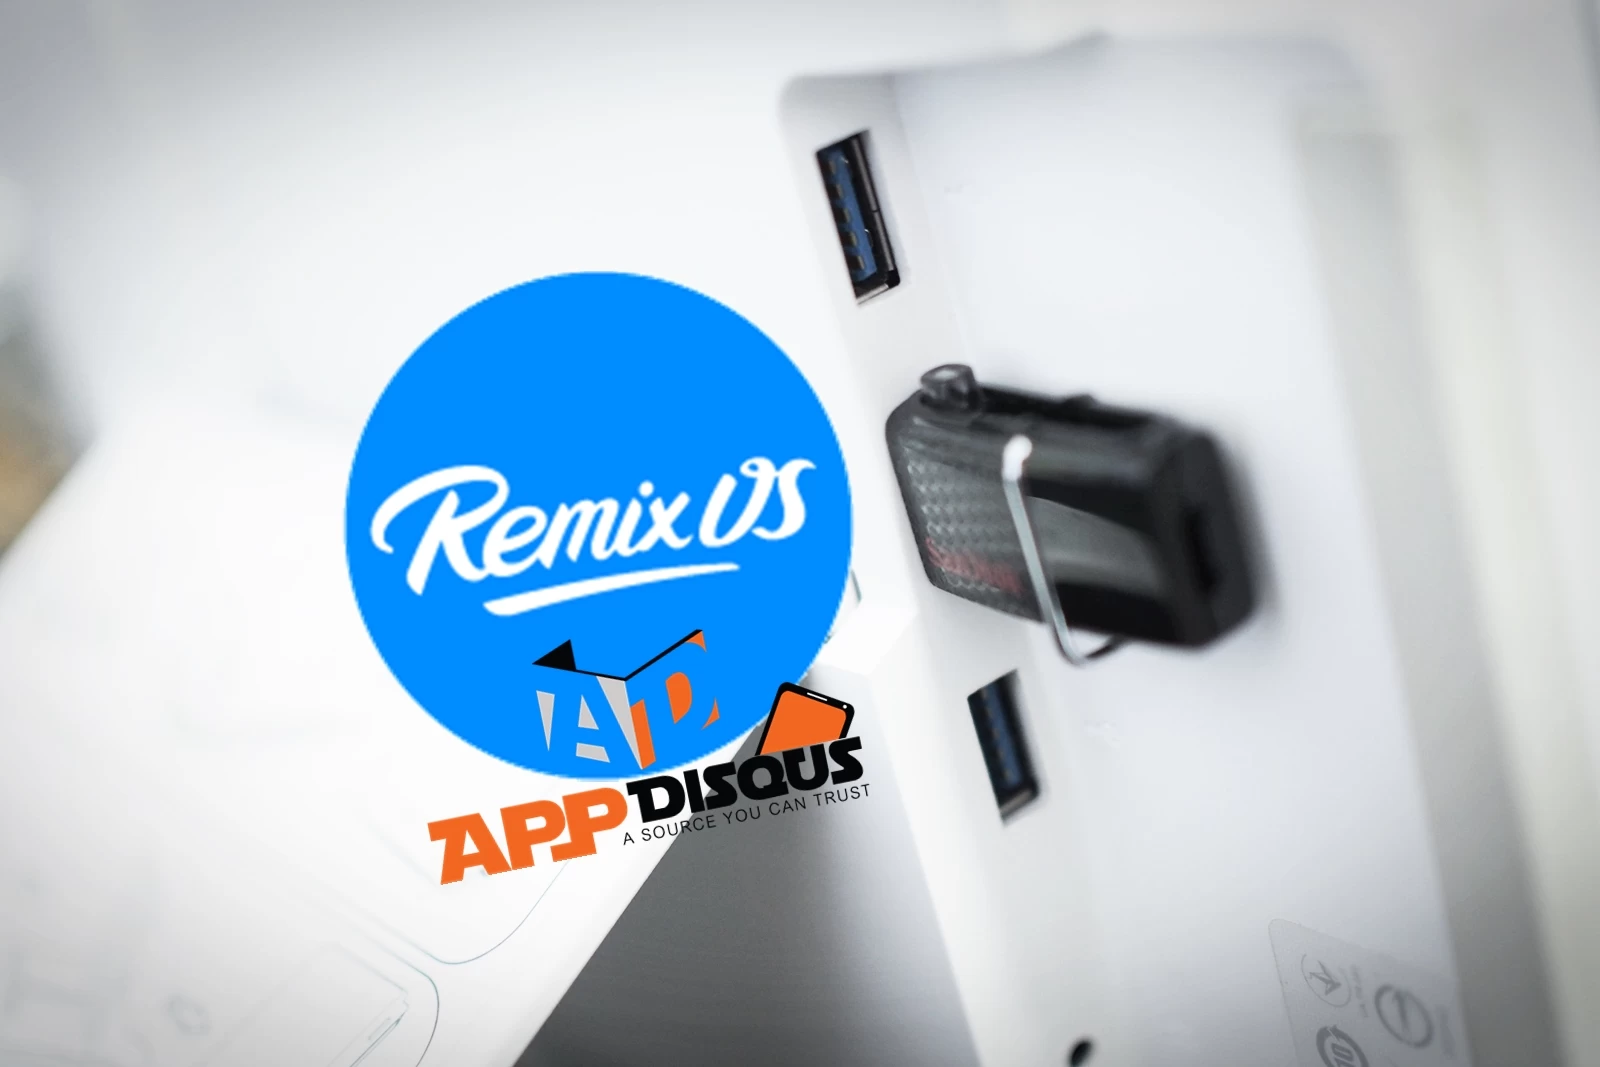 Remix os appdisqus | Android | ทดสอบใช้ Remix OS เปลี่ยนคอมพ์เราให้เป็นเดสท็อประบบ Android ด้วย USB เพียงอันเดียว (พร้อมวิธีติดตั้งและลิงก์ดาวน์โหลด)